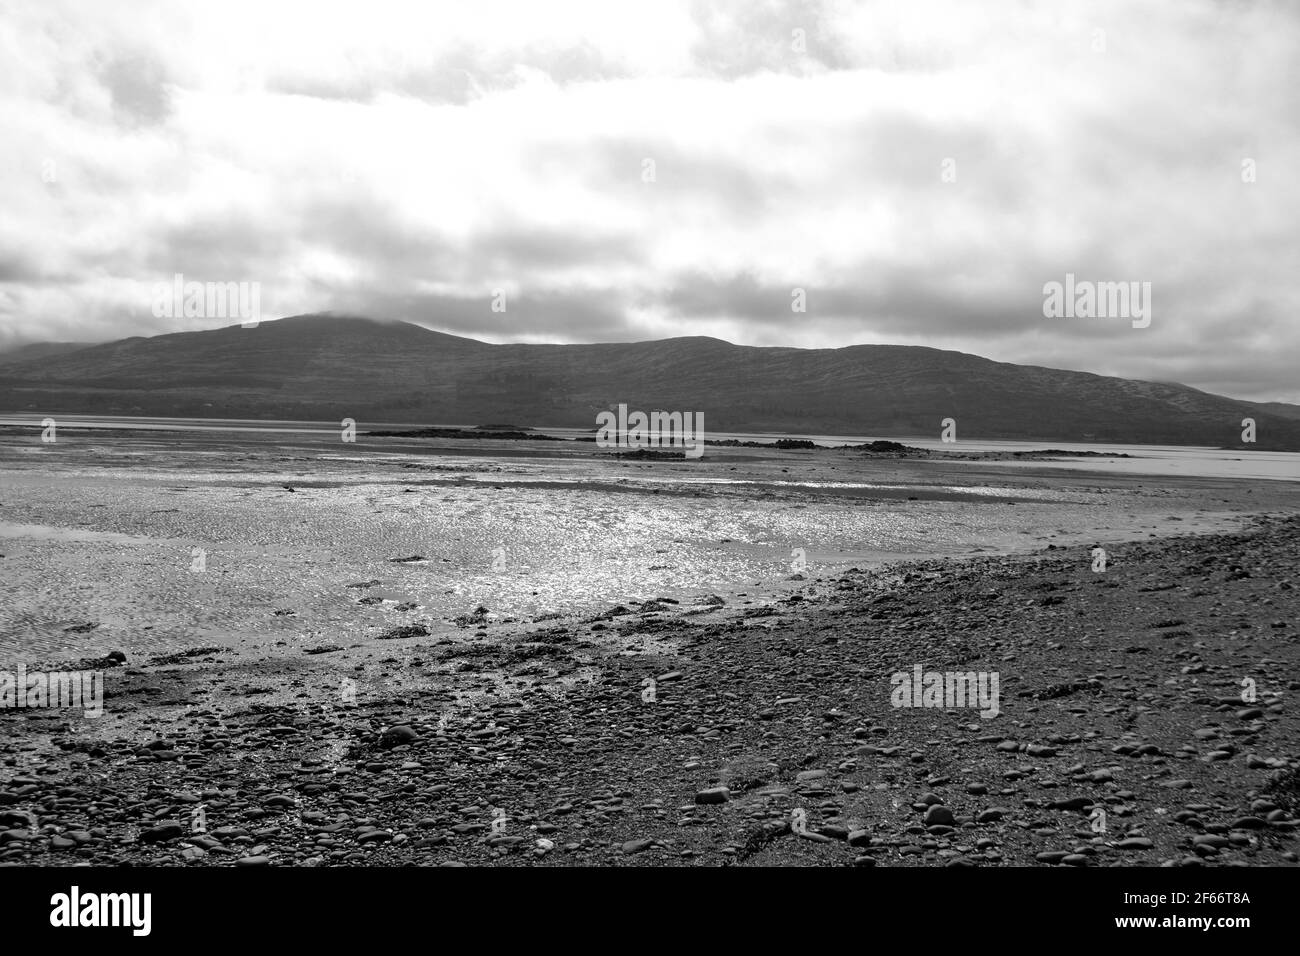 Kenmare Bay, Contea di Kerry, Irlanda. Bassa marea in un giorno nuvoloso. Foto Stock